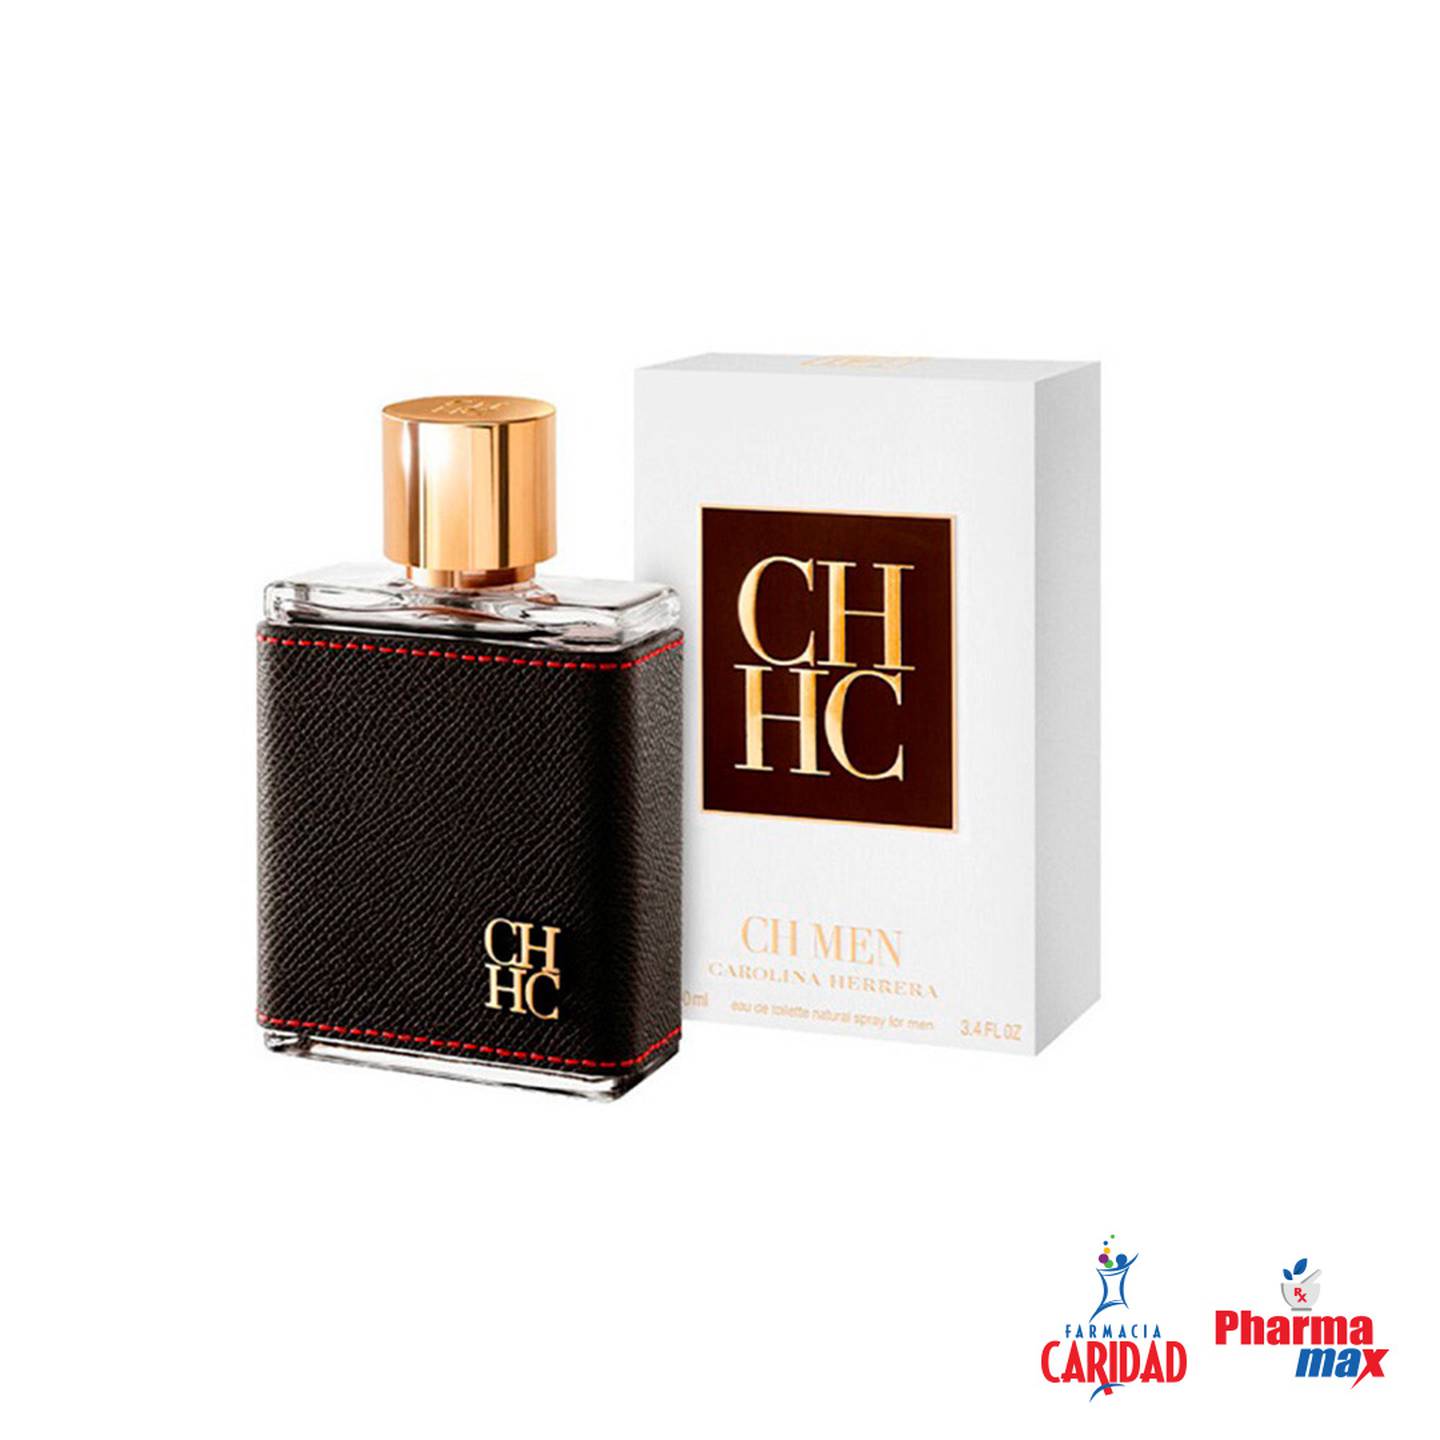 Encuentra el aroma perfecto que evoque recuerdos y transmita rasgos de su personalidad, carácter y elegancia con las exquisitas fragancias para hombres CH Men de Carolina Herrera o el perfume Intenso de Dolce & Gabbana.